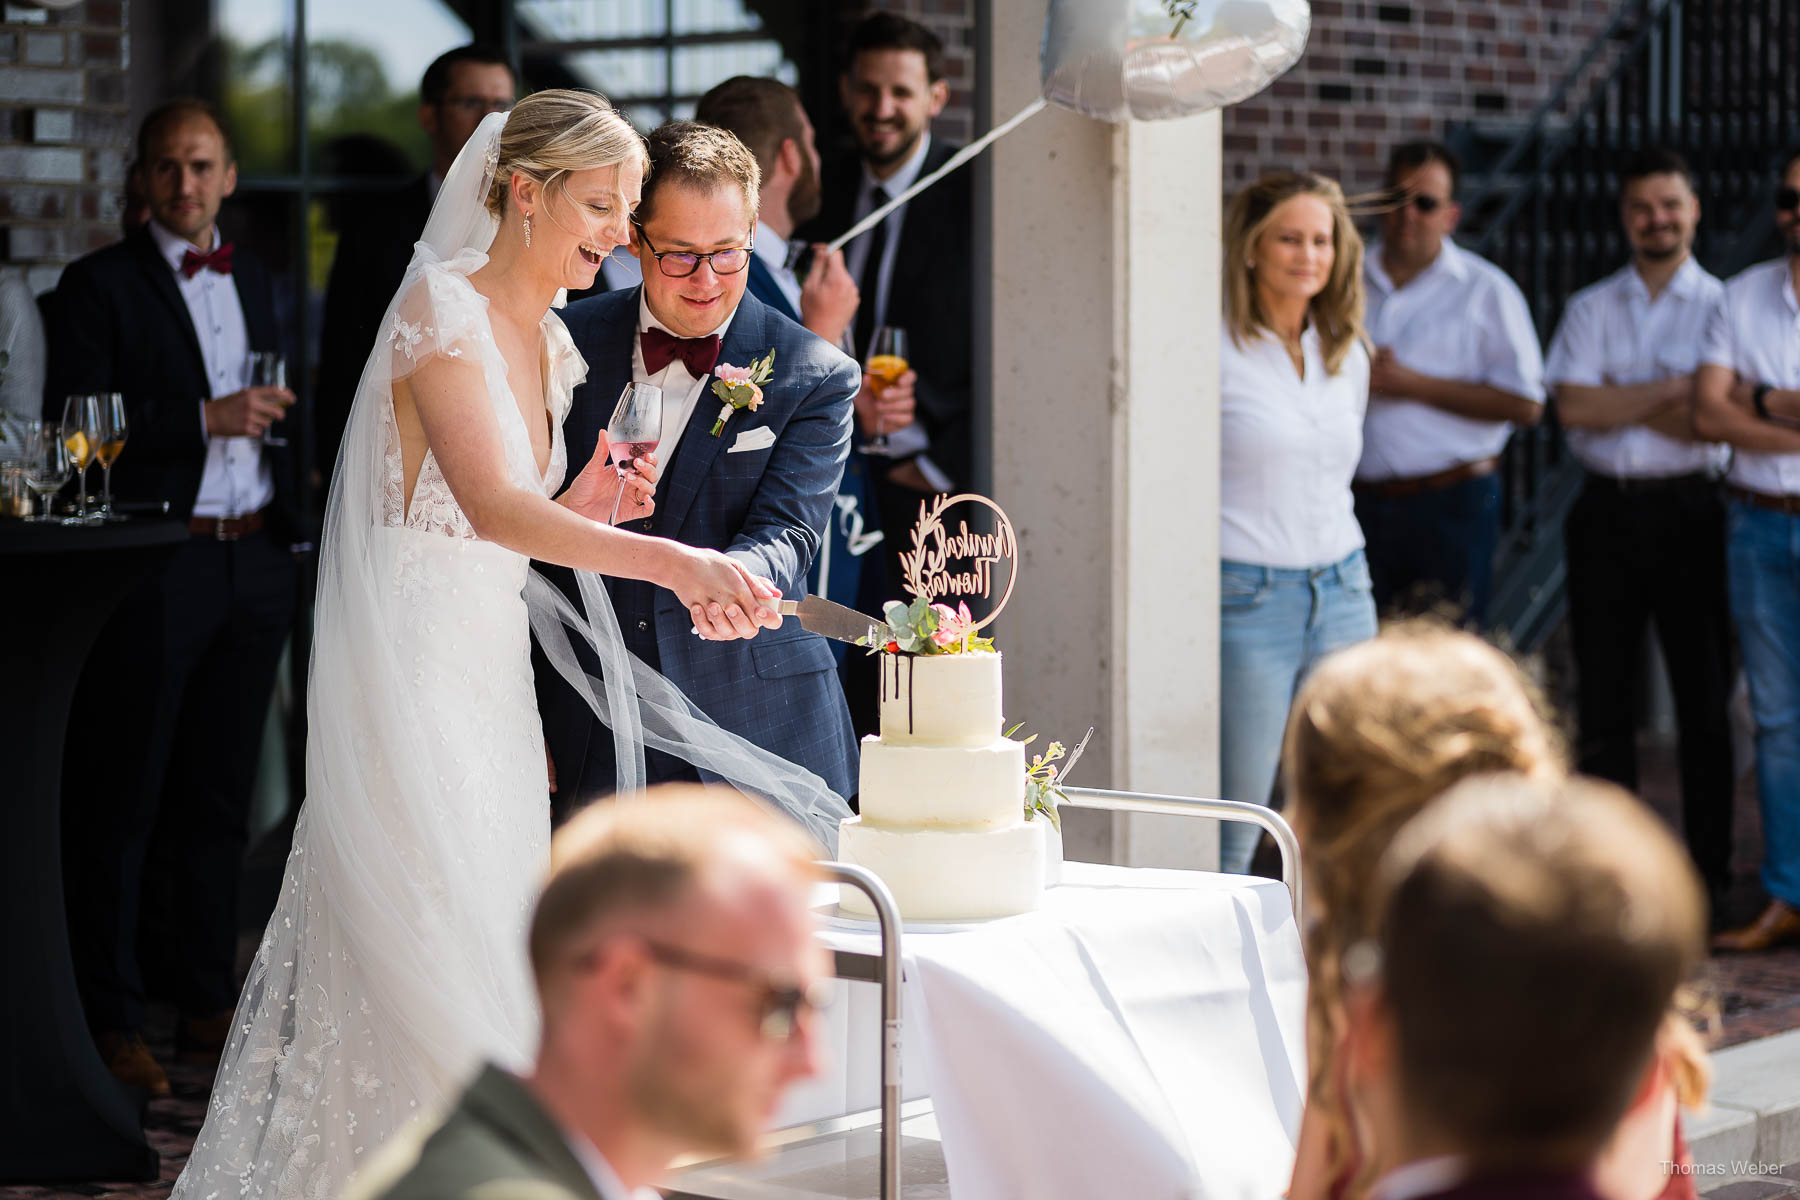 Hochzeitsempfang an der Meyerei Rastede am Zollhaus Rastede, Hochzeitsfotograf Thomas Weber aus Oldenburg